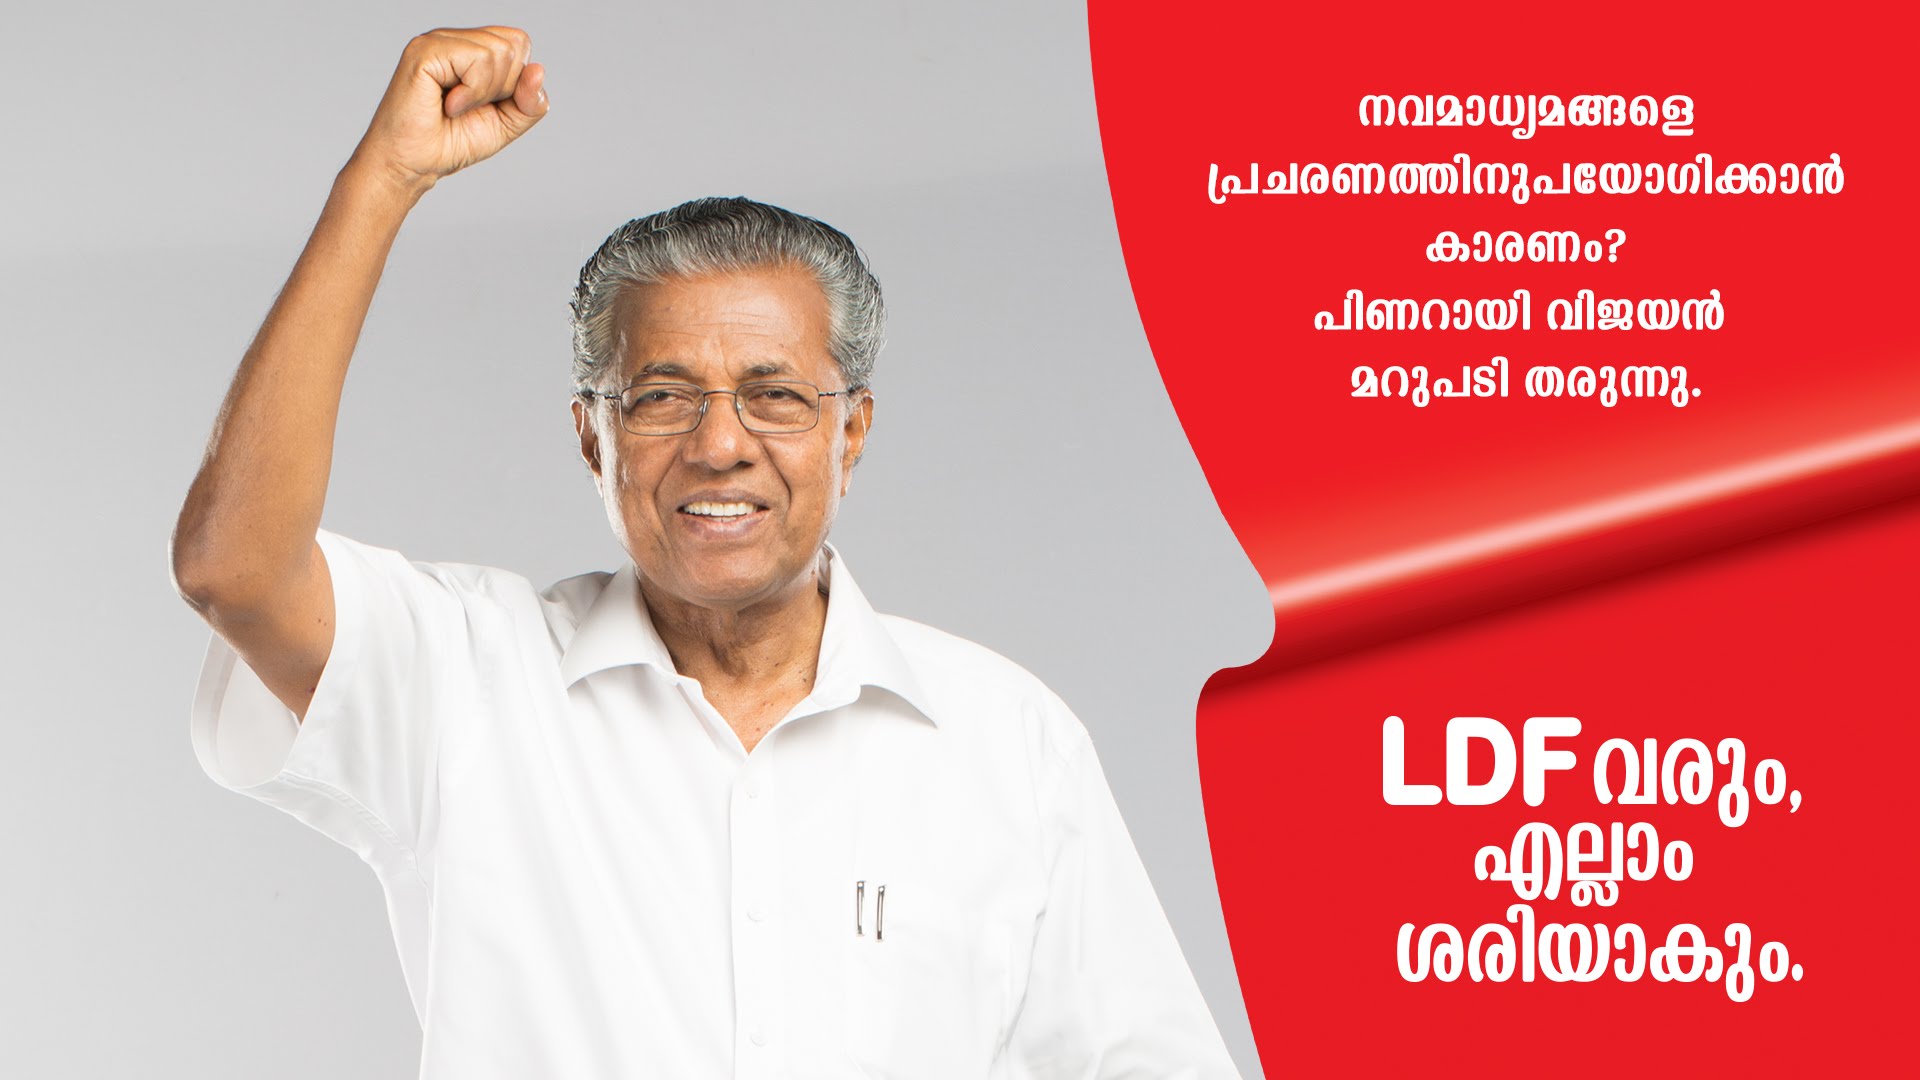 En seulement deux années, les communistes ont redressé la situation économique et sociale au Kerala